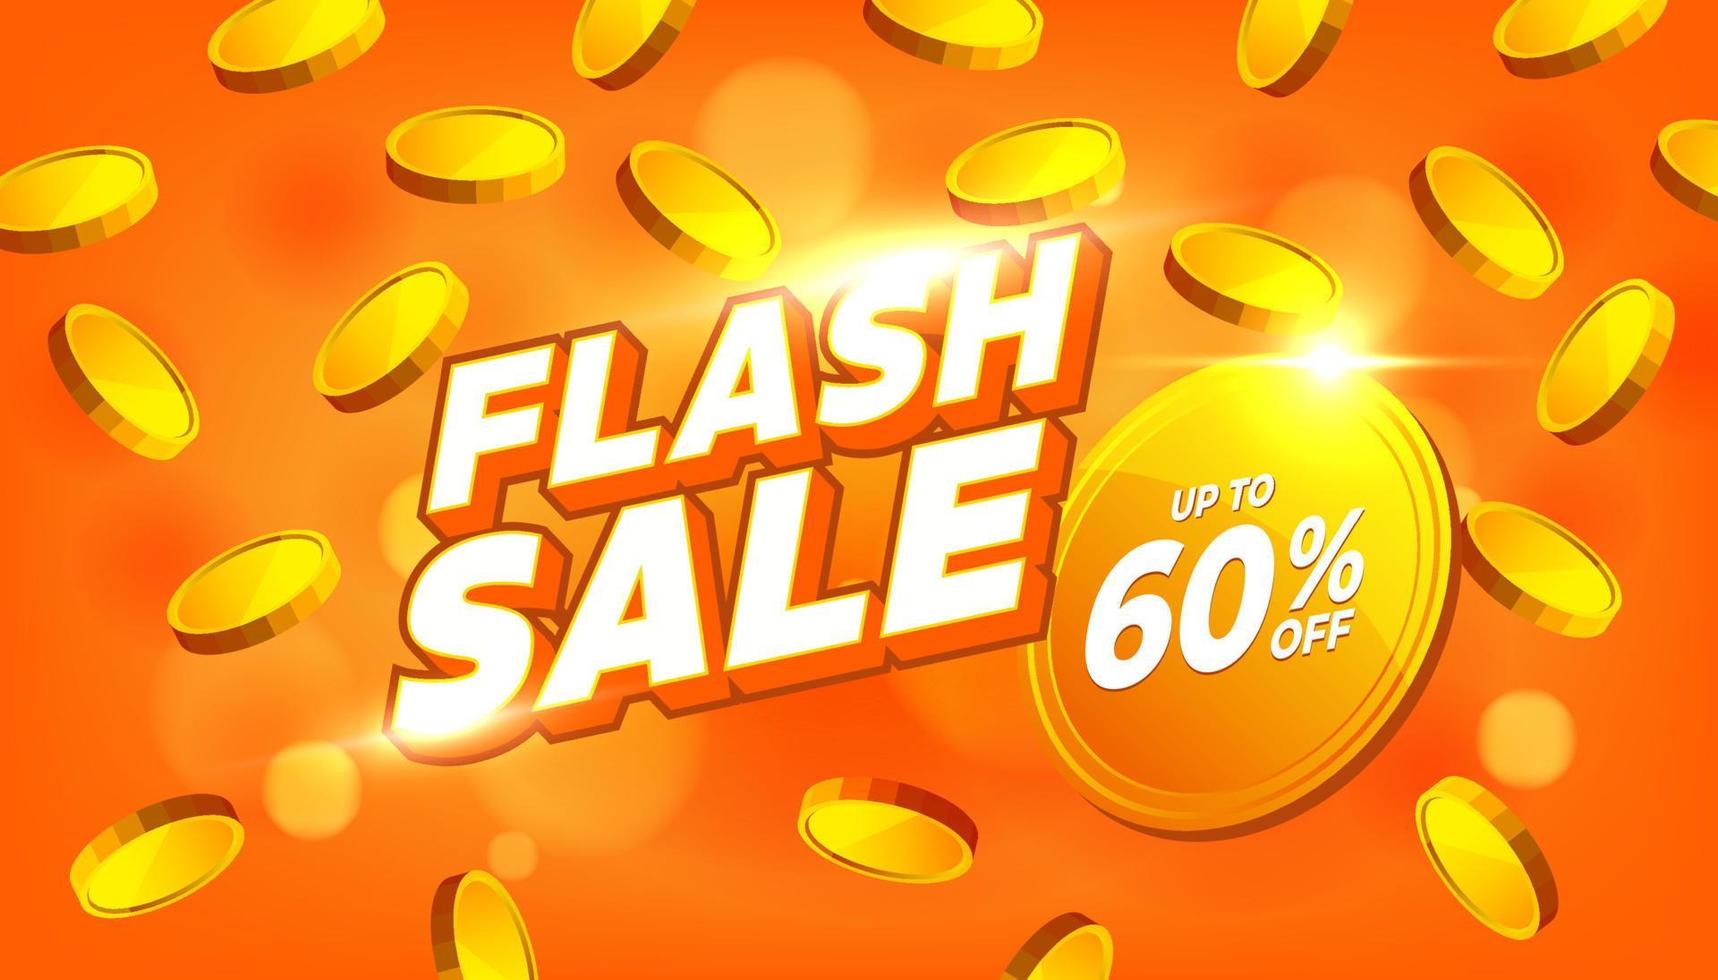 promoção de modelo de banner de desconto de venda flash. oferta especial de venda em flash com 60% de desconto. vetor